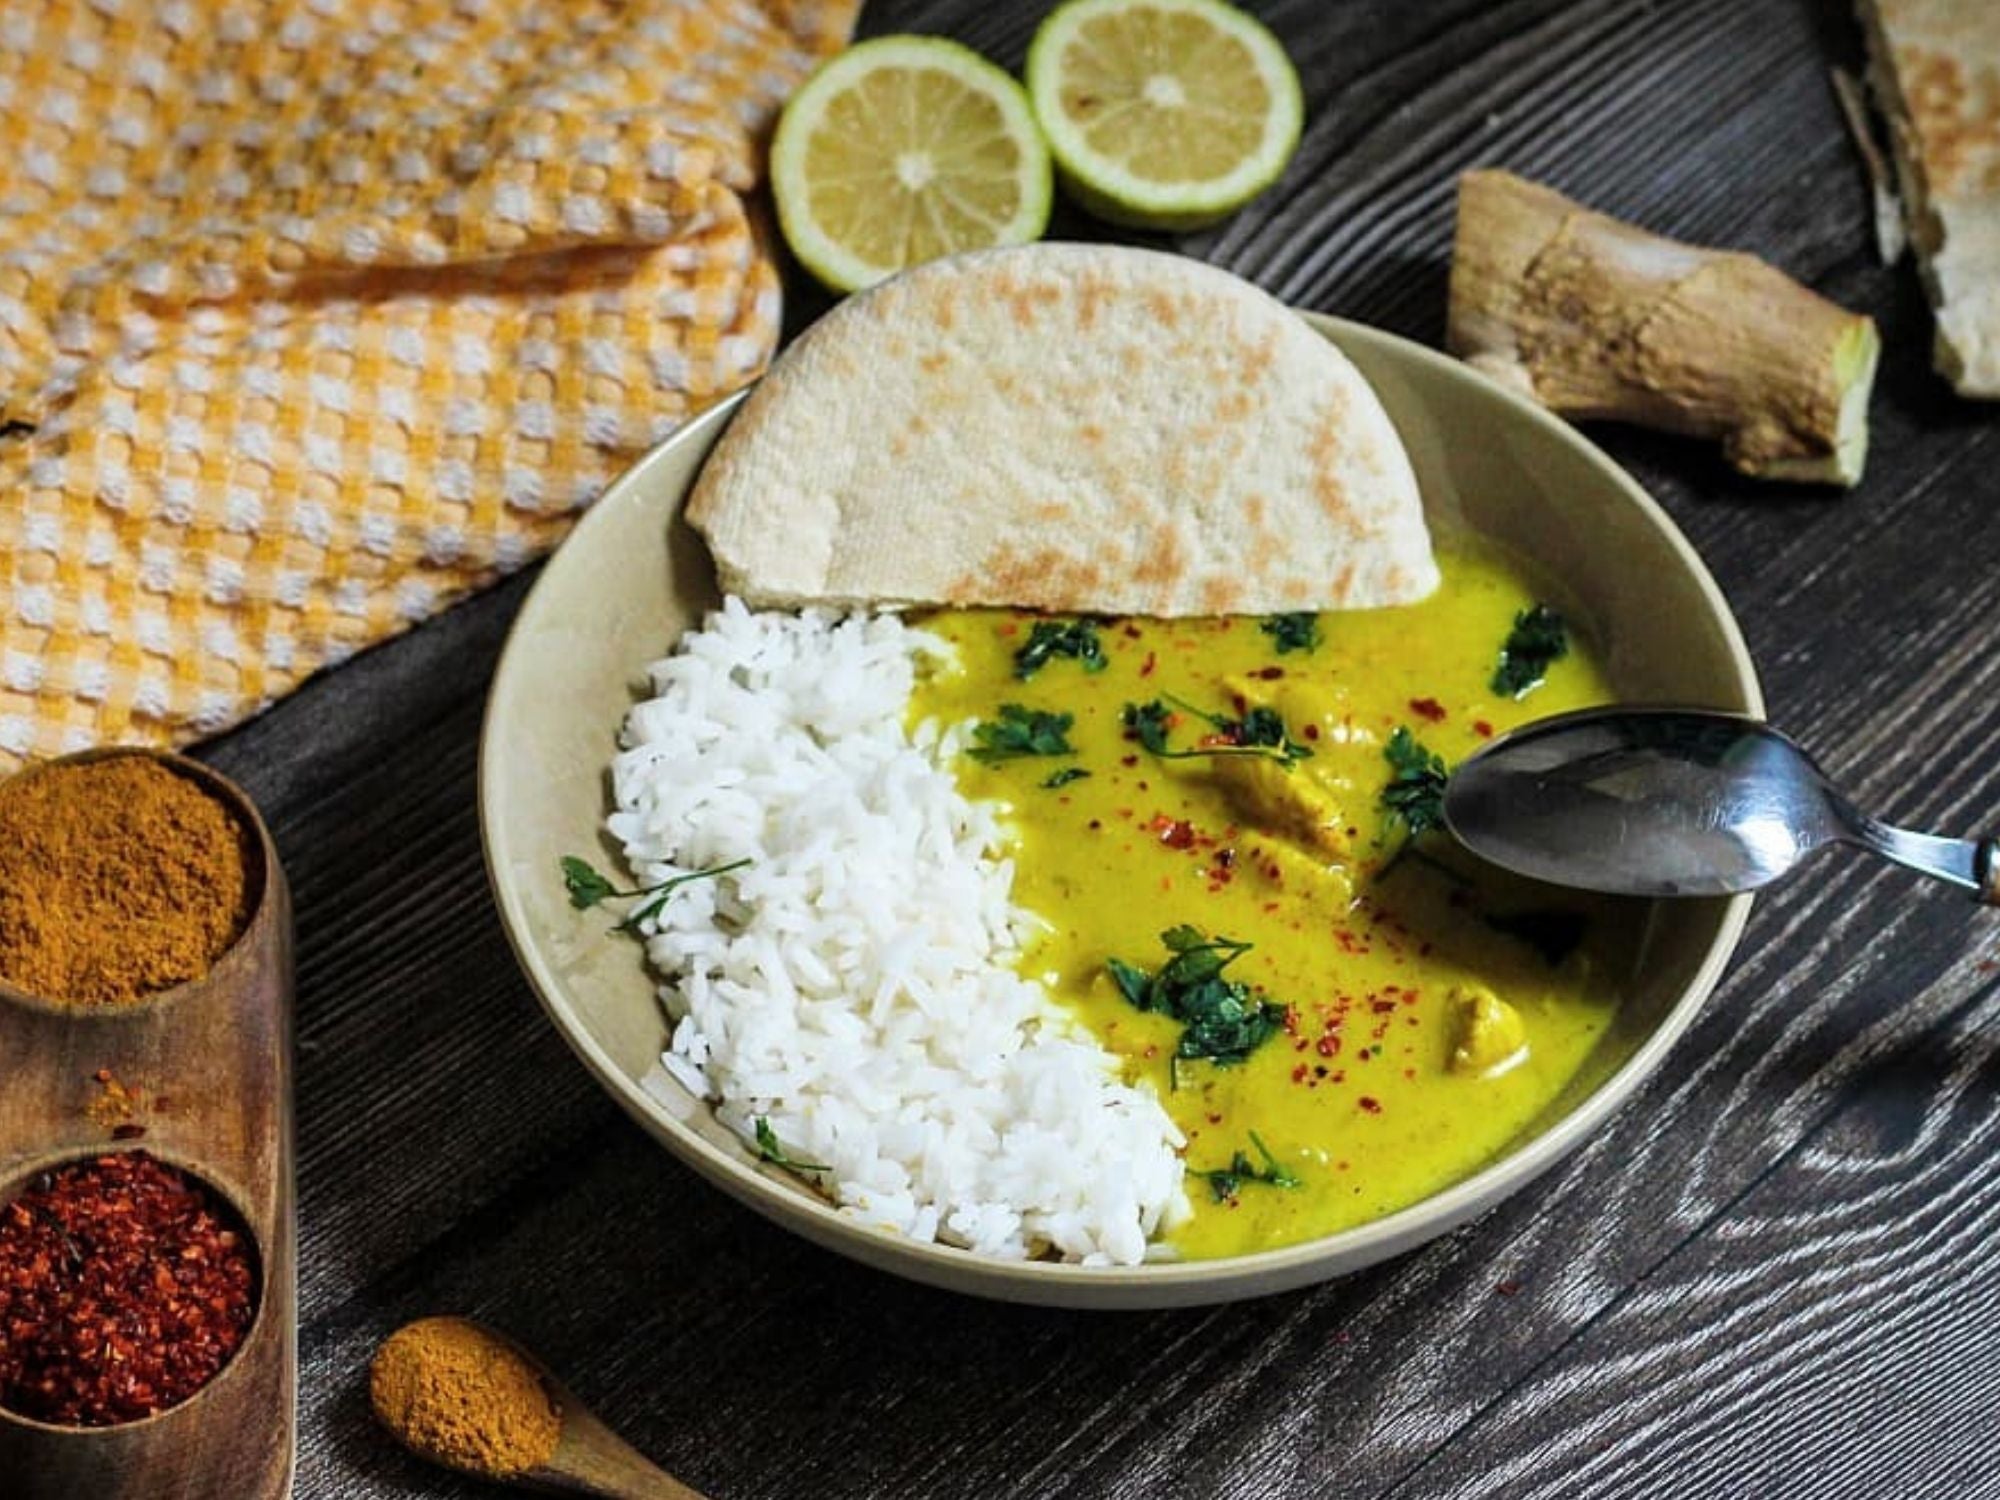 Curry de pollo con leche de coco y chili flakes